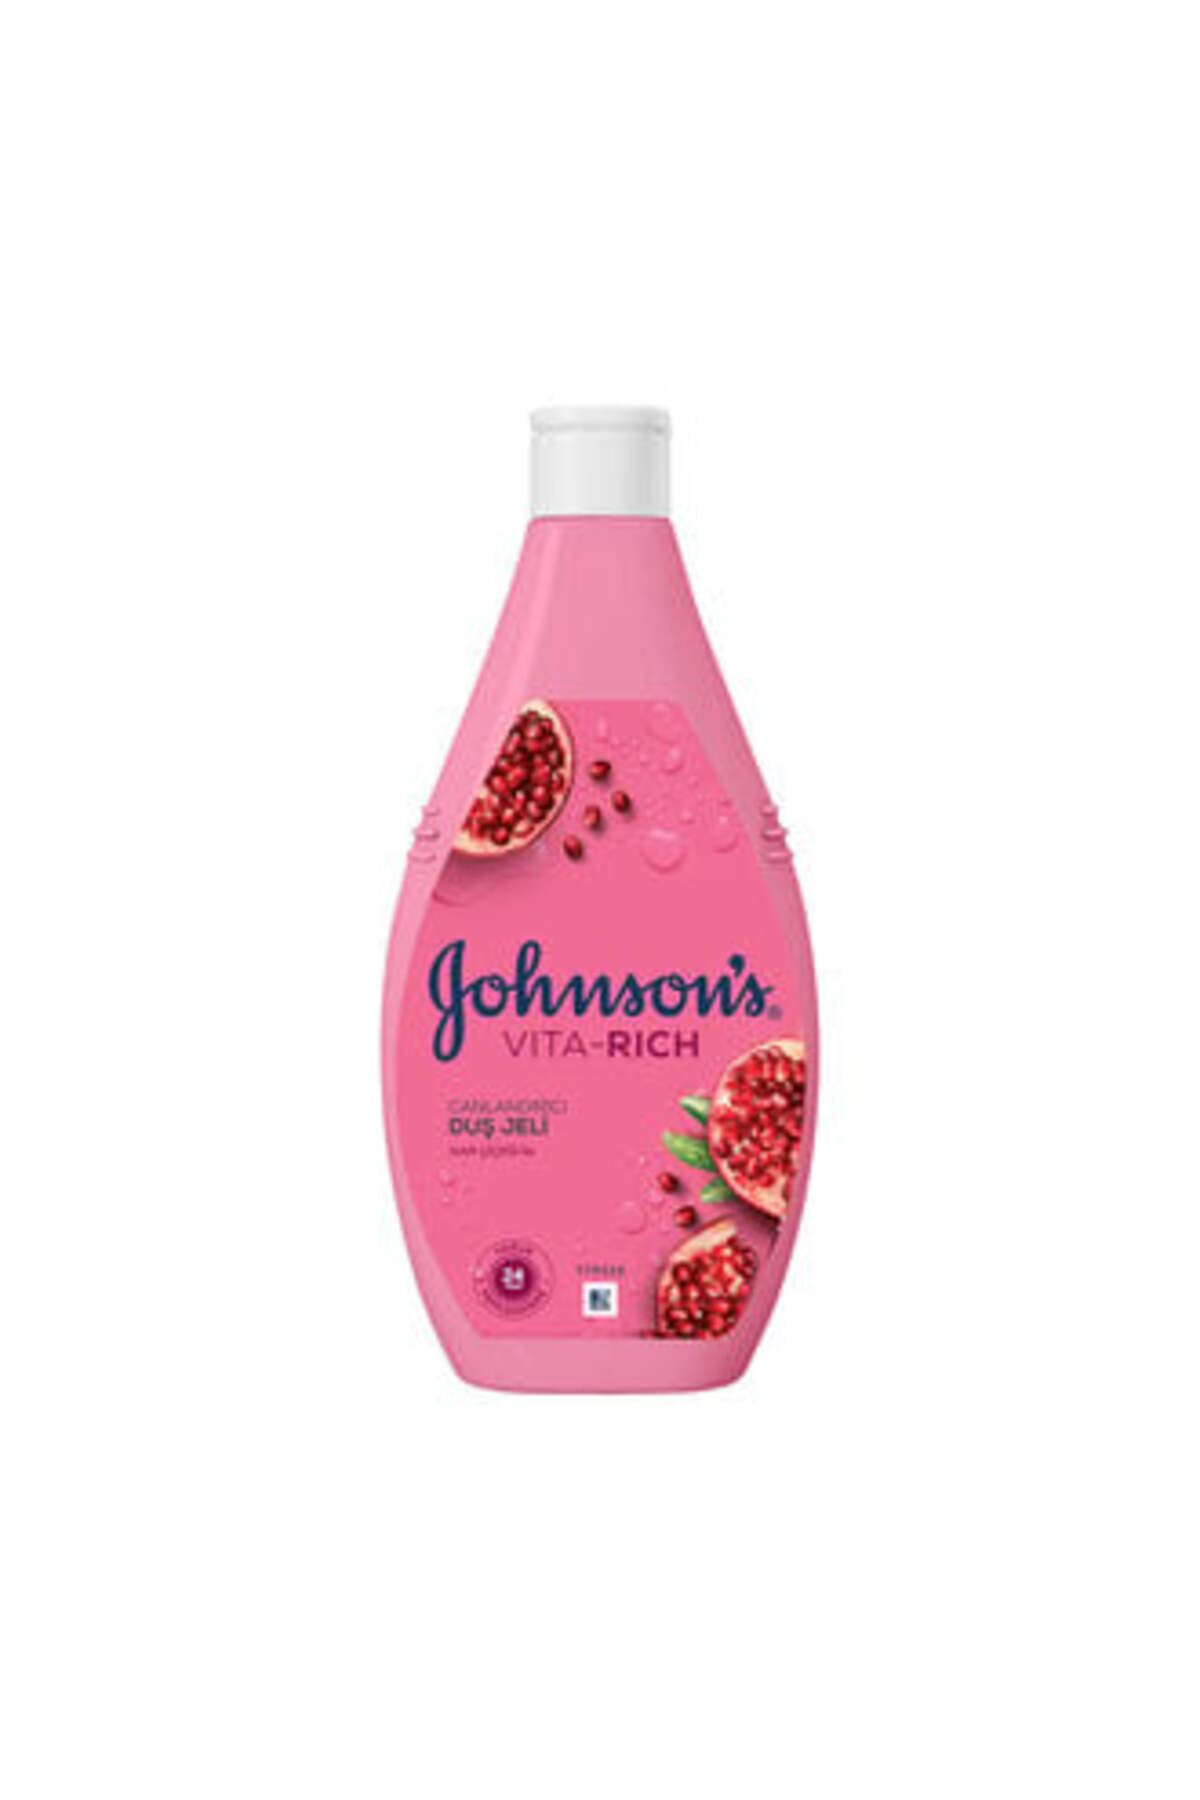 Johnson's Vıta-rıch Nar Çiçeği Canlandırıcı Duş Jeli 400Ml ( 1 ADET )